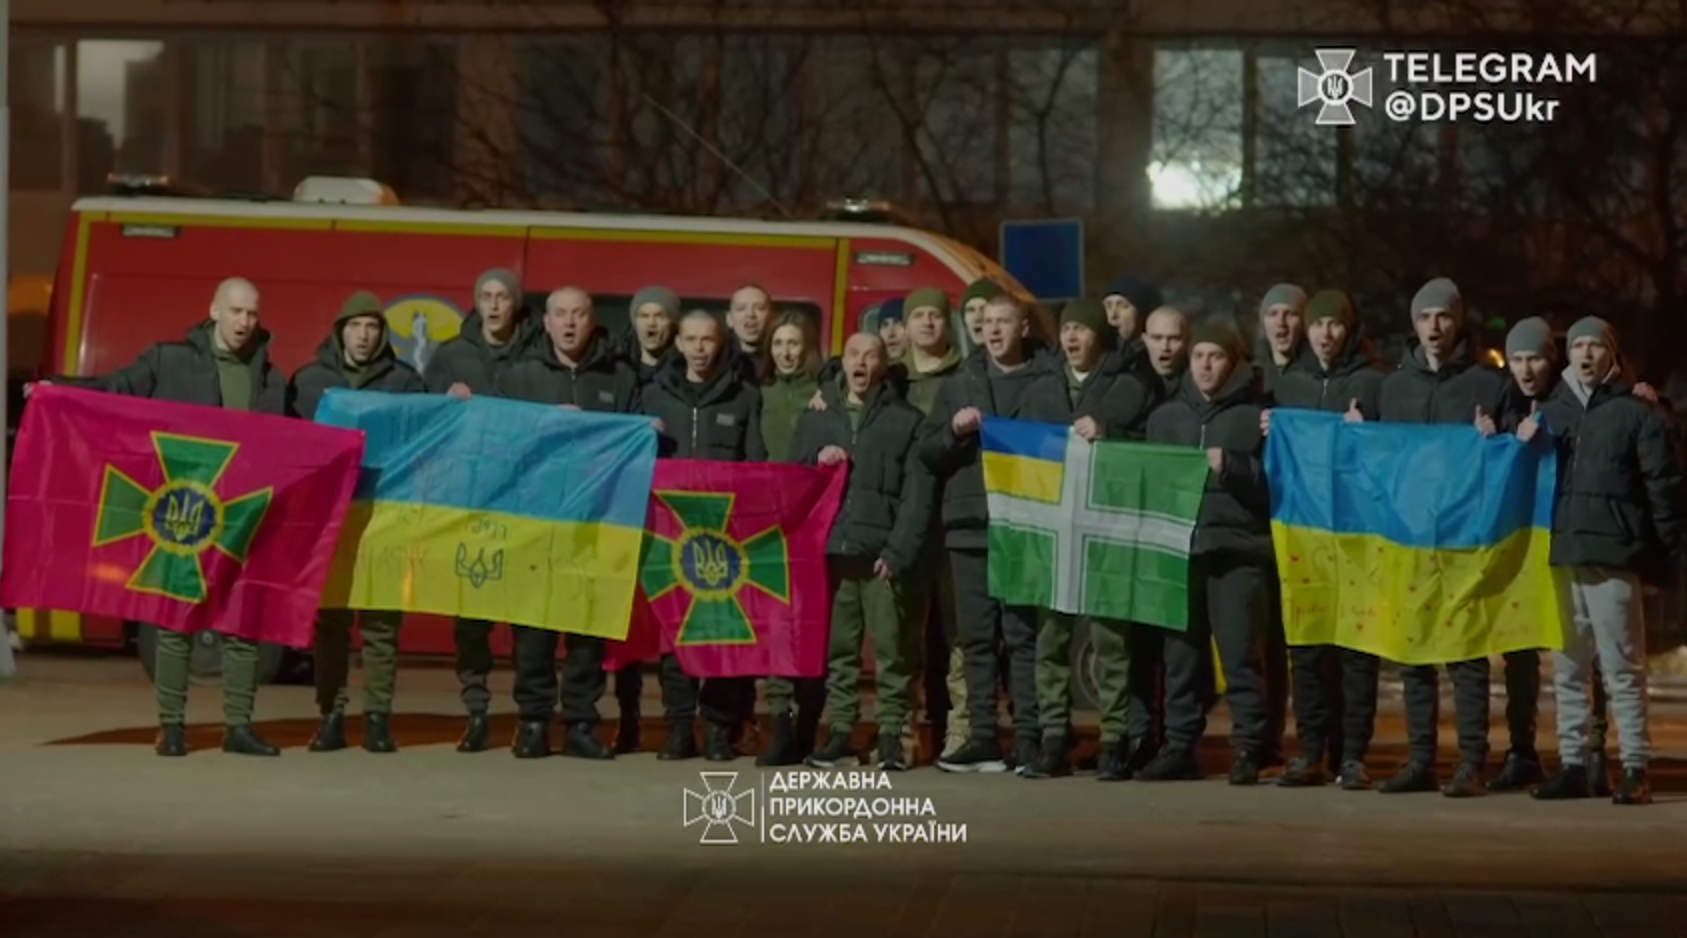 "Привіт, мамо, я повернувся": у ДПСУ показали зворушливі кадри з українцями, яких вдалося повернути з полону. Відео